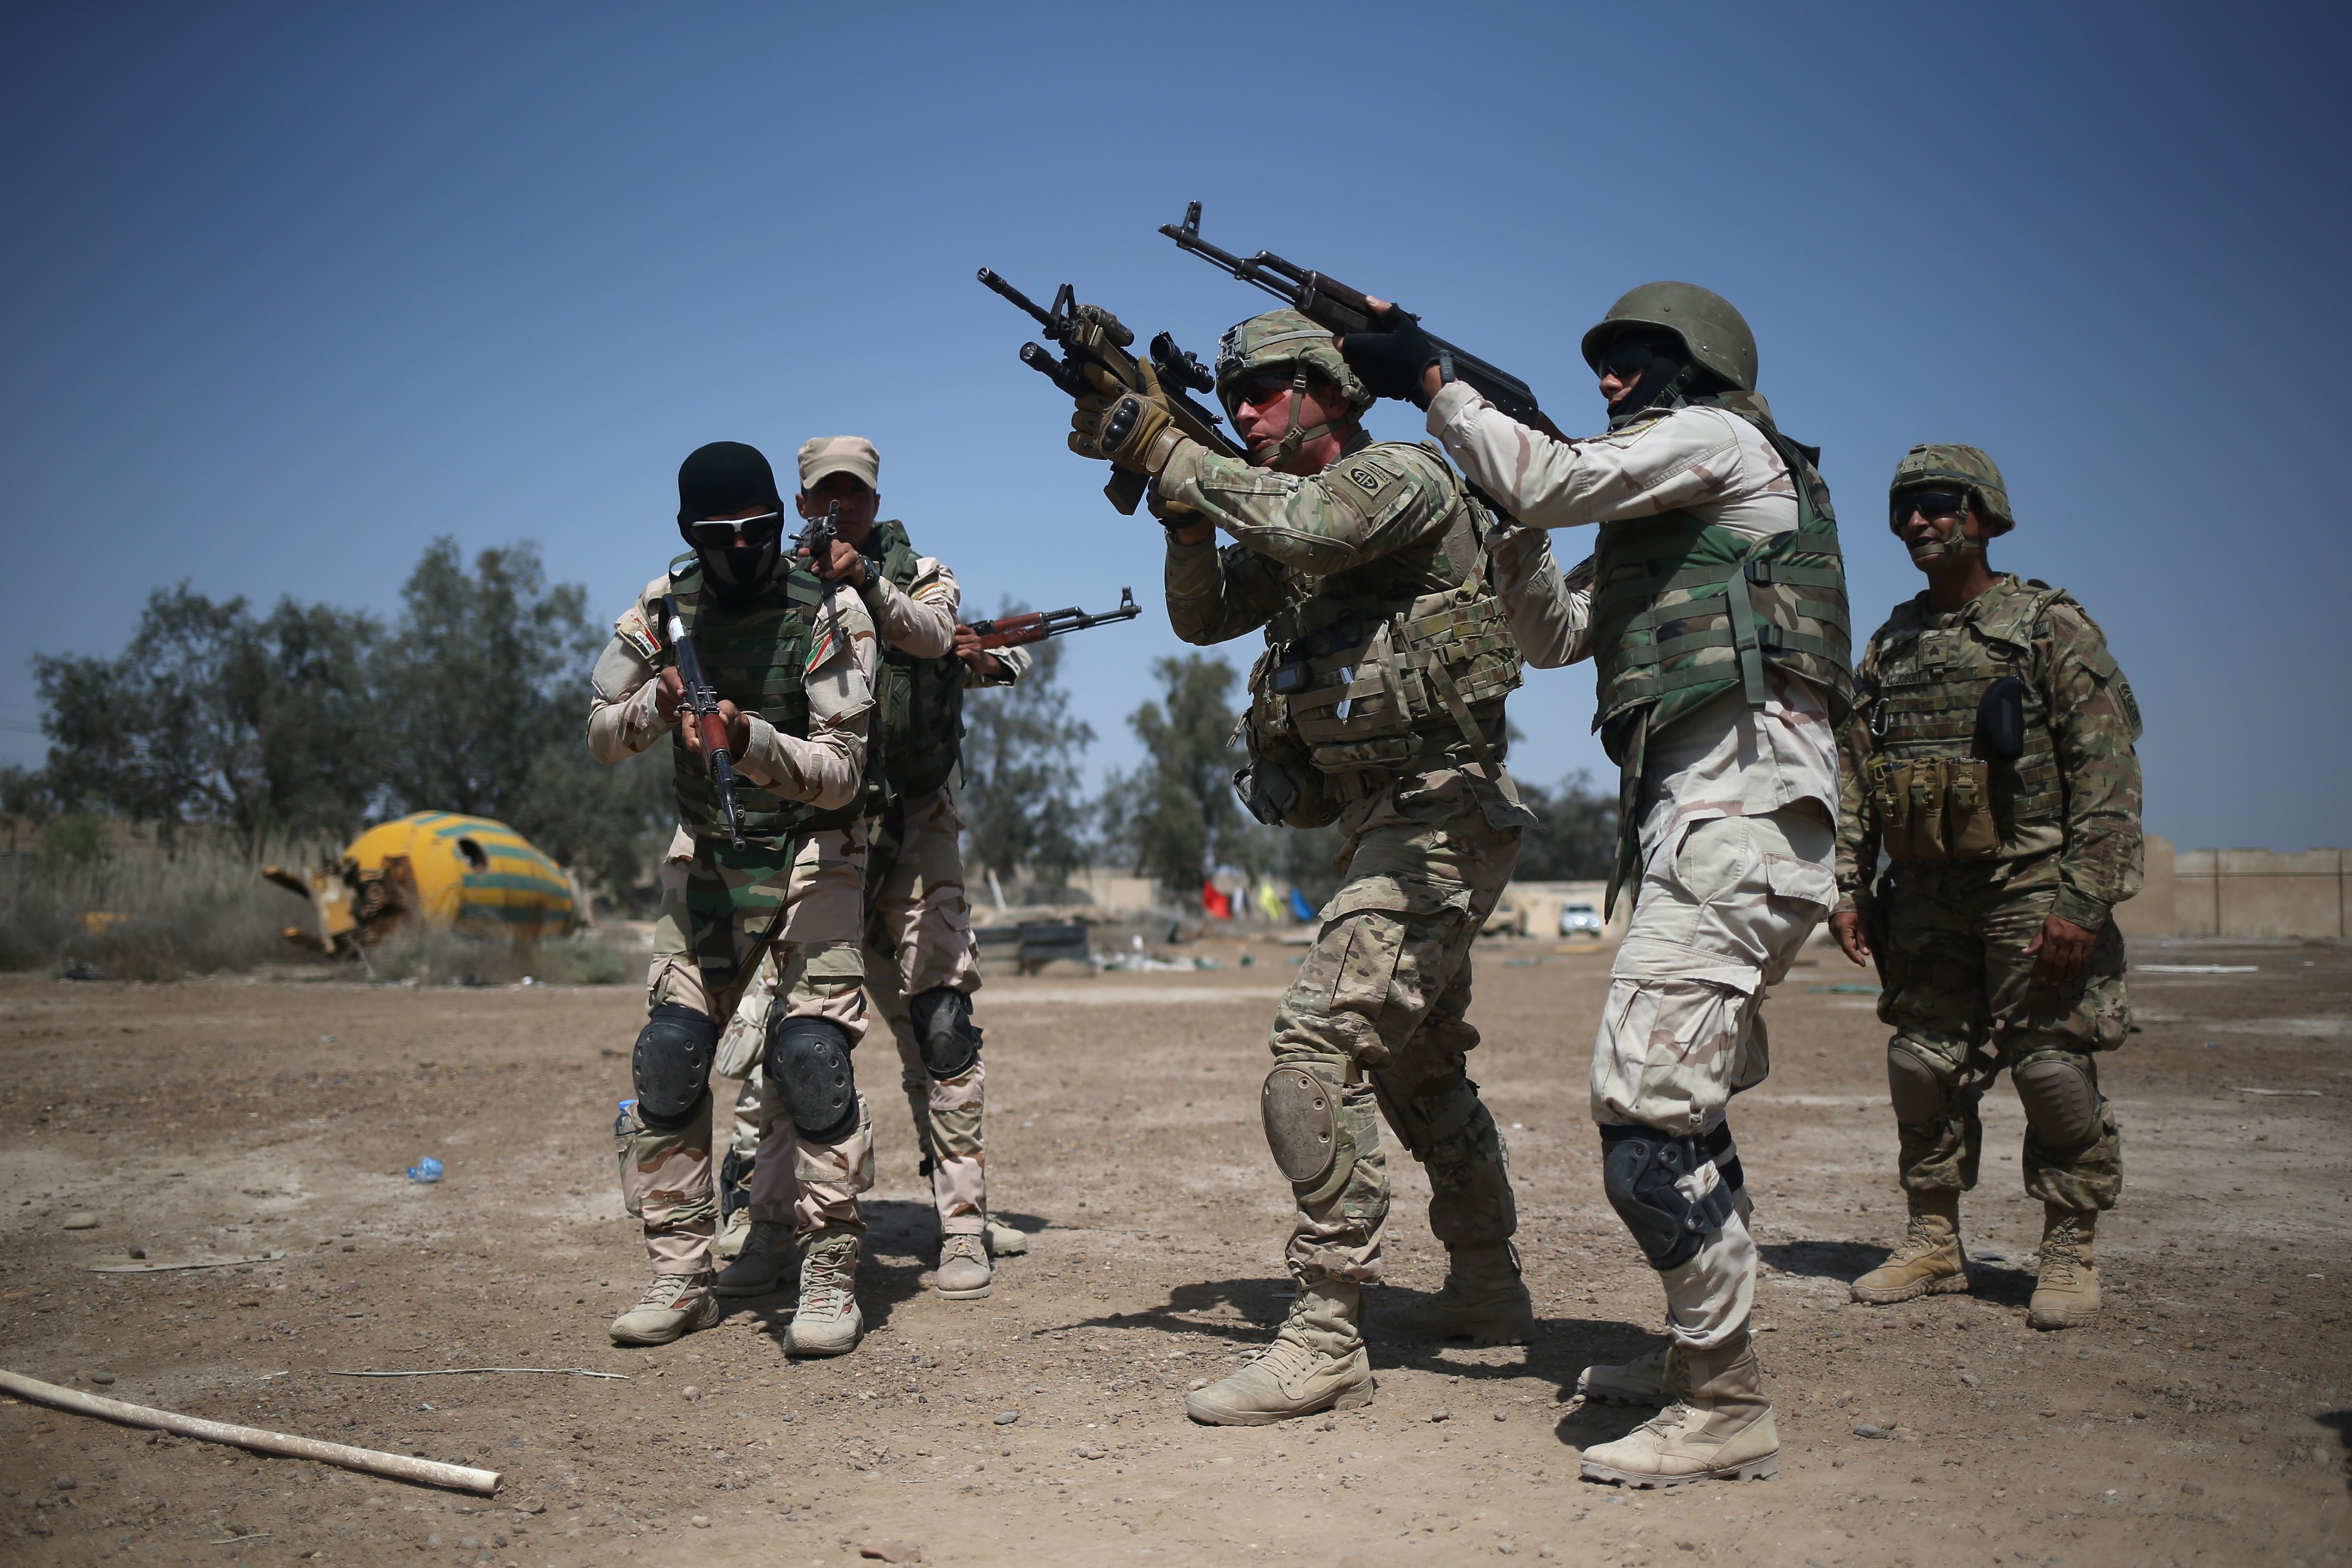 U.S. Army trainers instruct Iraqi Army recruits at a military base on April 12, 2015 in Taji, Iraq.